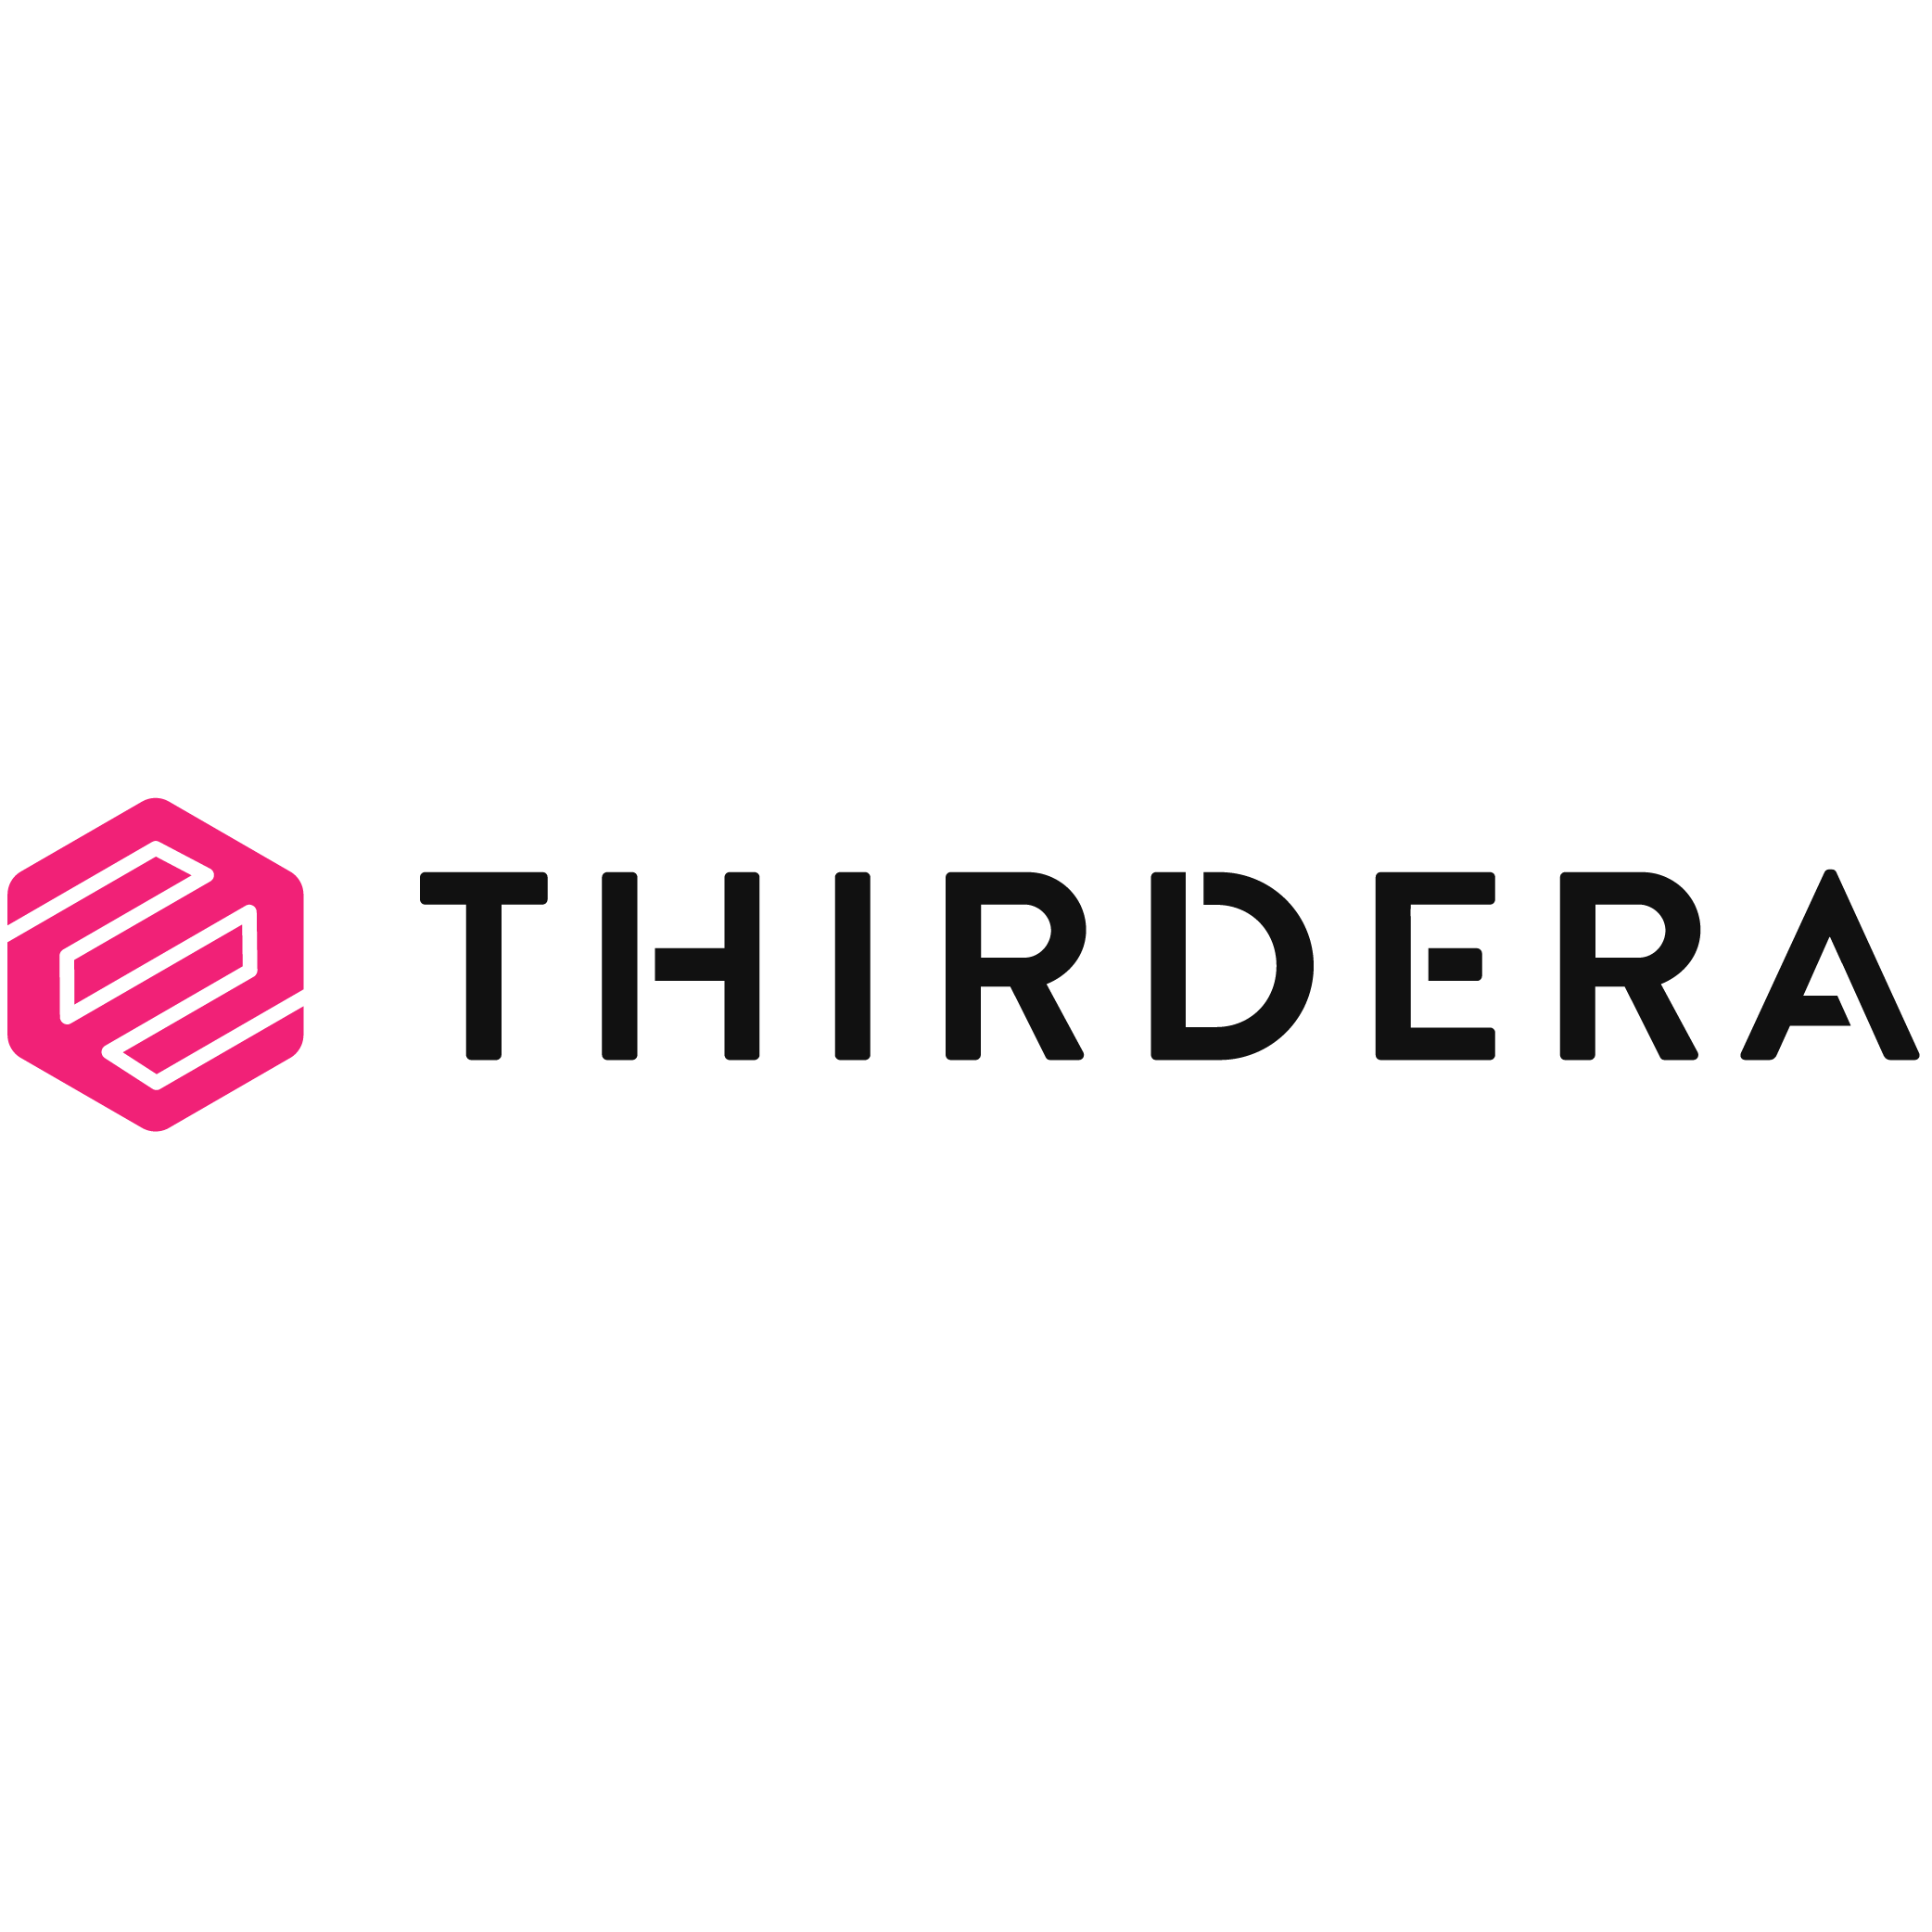 Thirdera Logo for Avertium-01